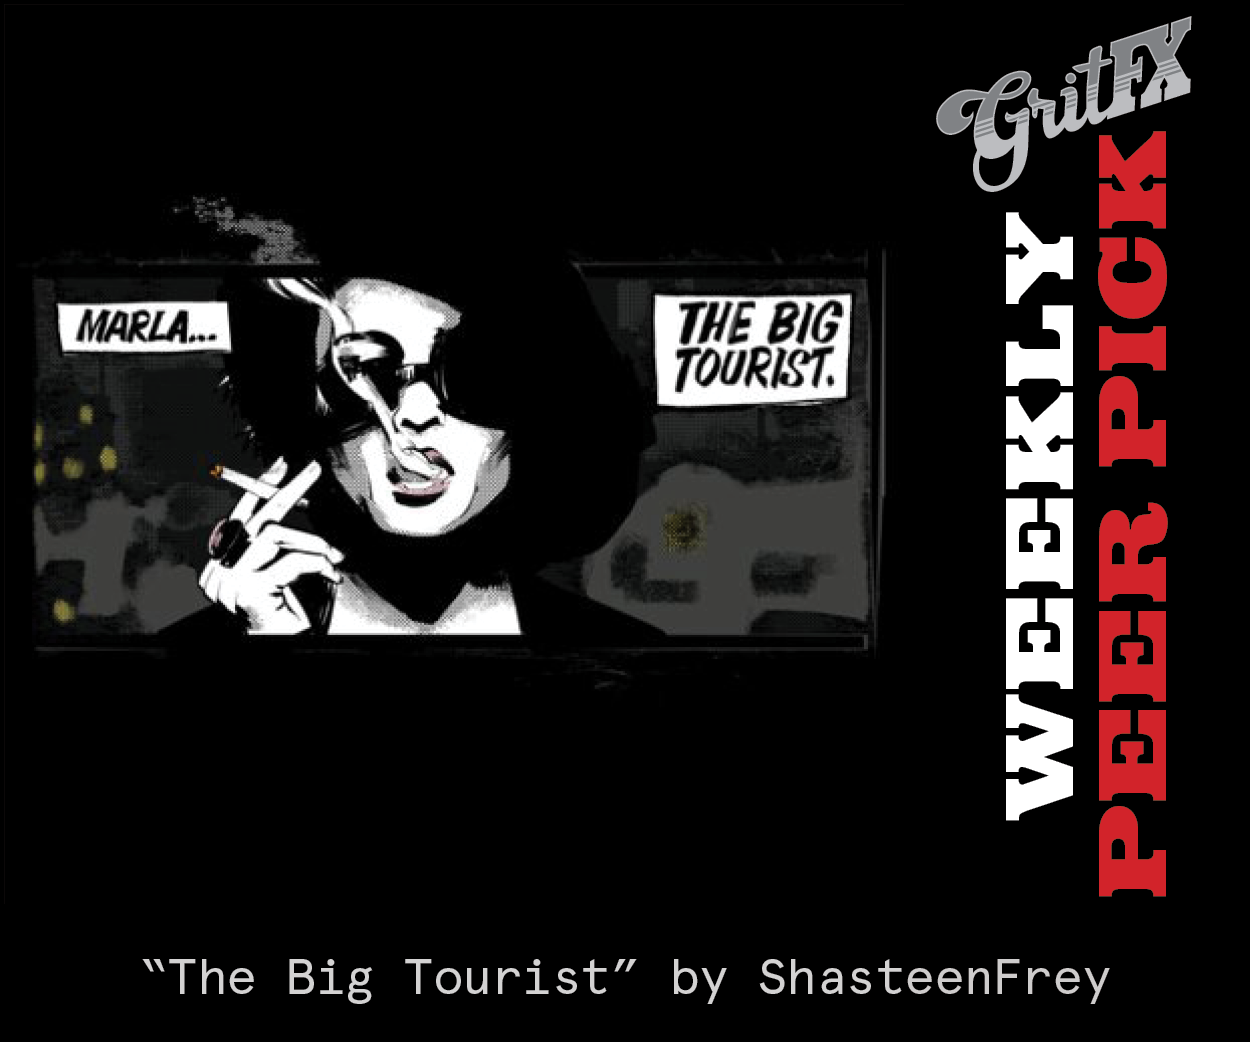 The Big Tourist - "Fight Club" T-Shirts